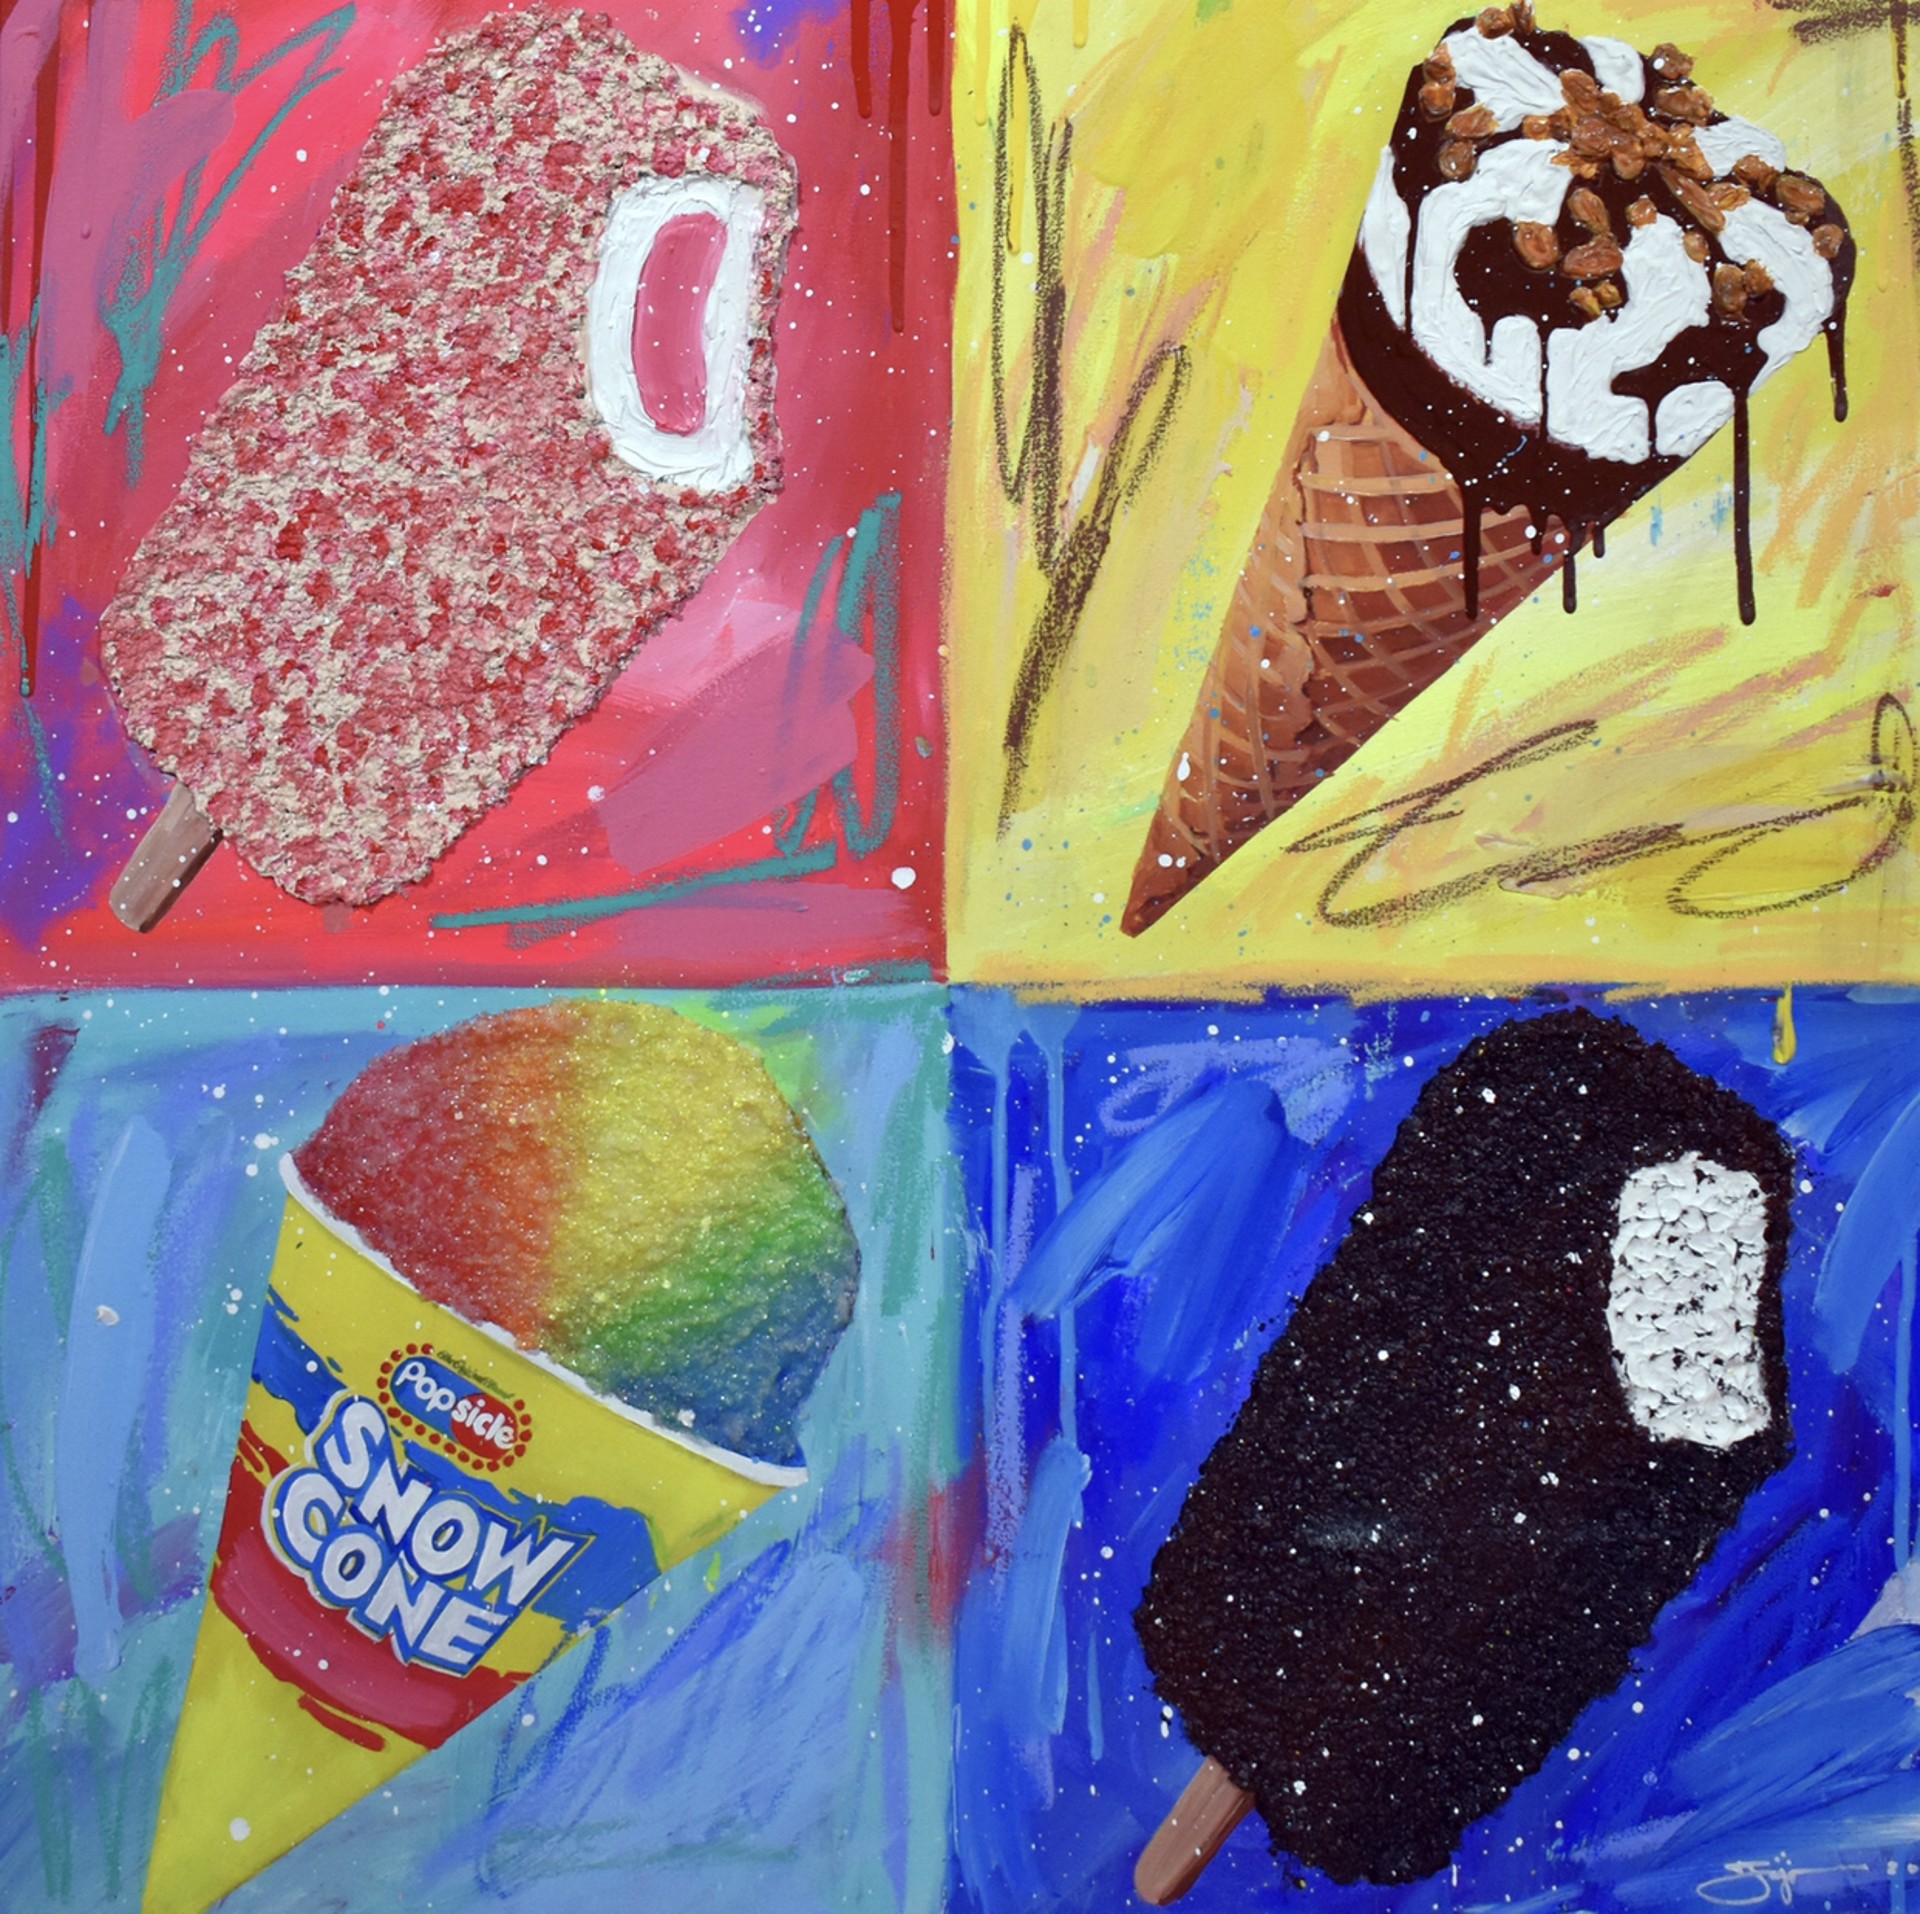 Four Ice Creams by Jojo Anavim